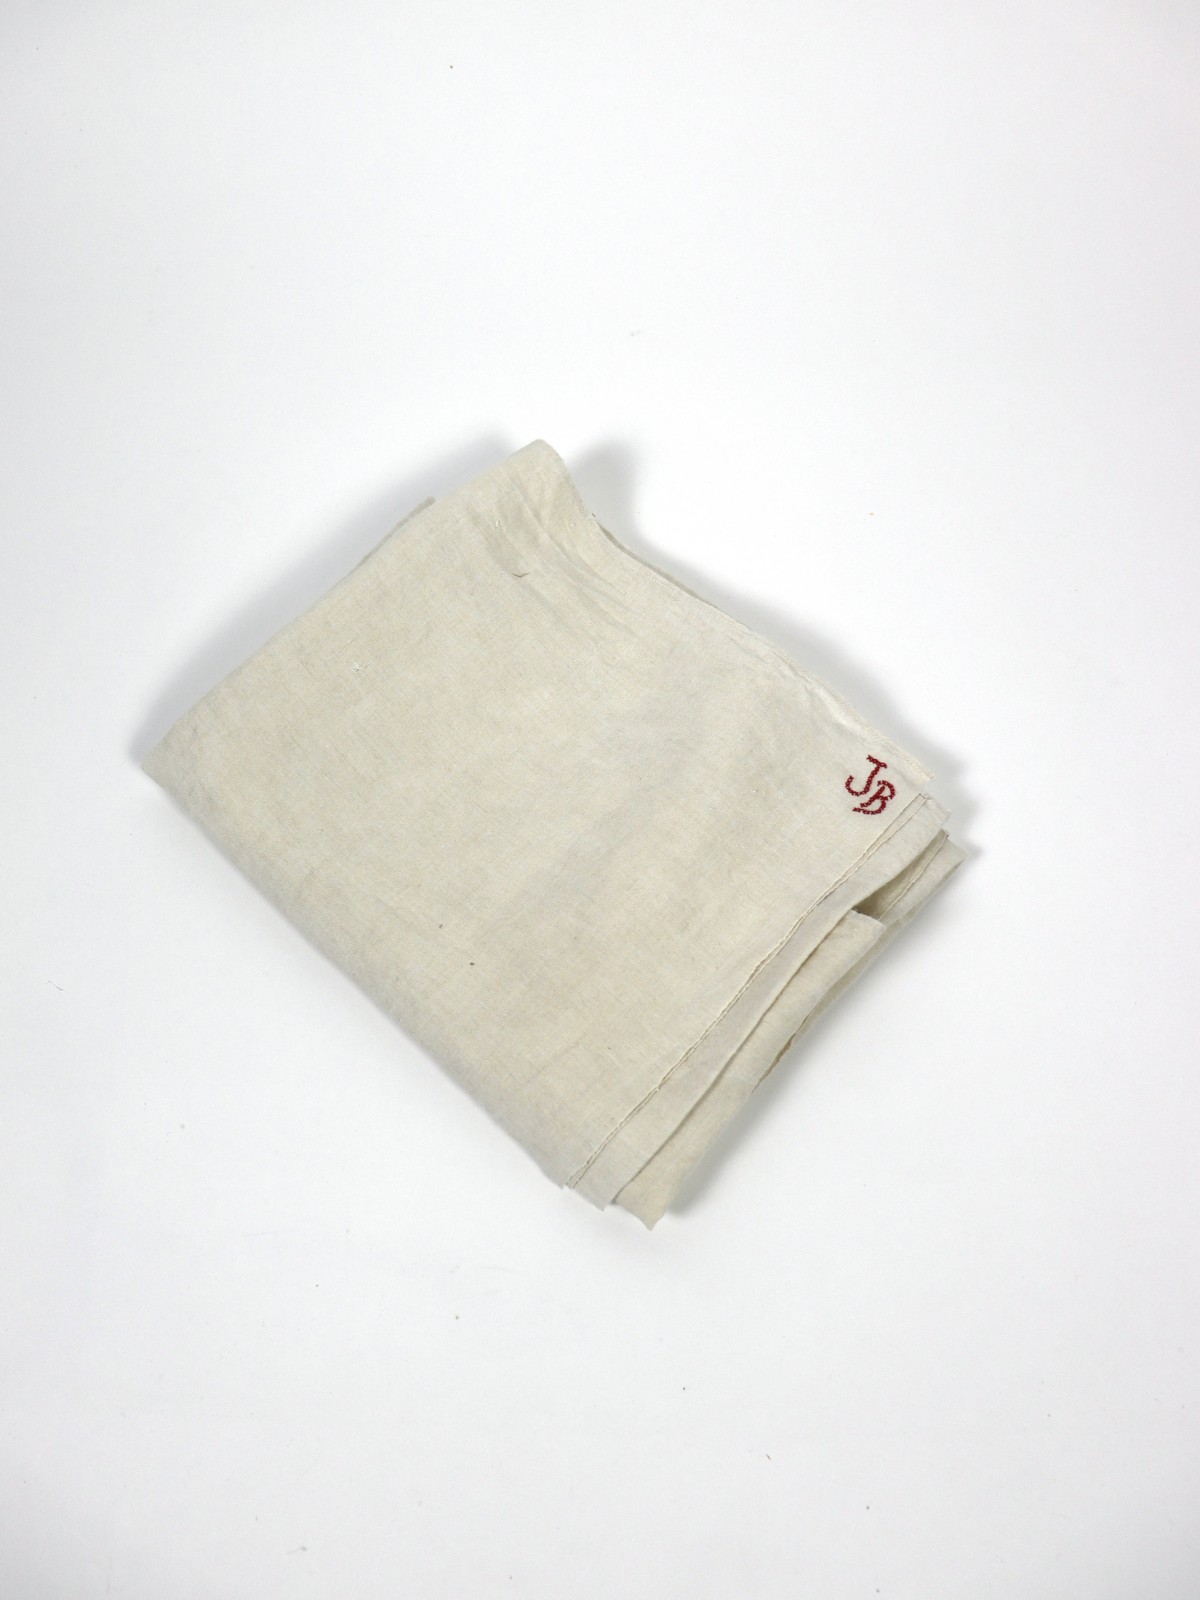 French linen sheet, White linen, monogram